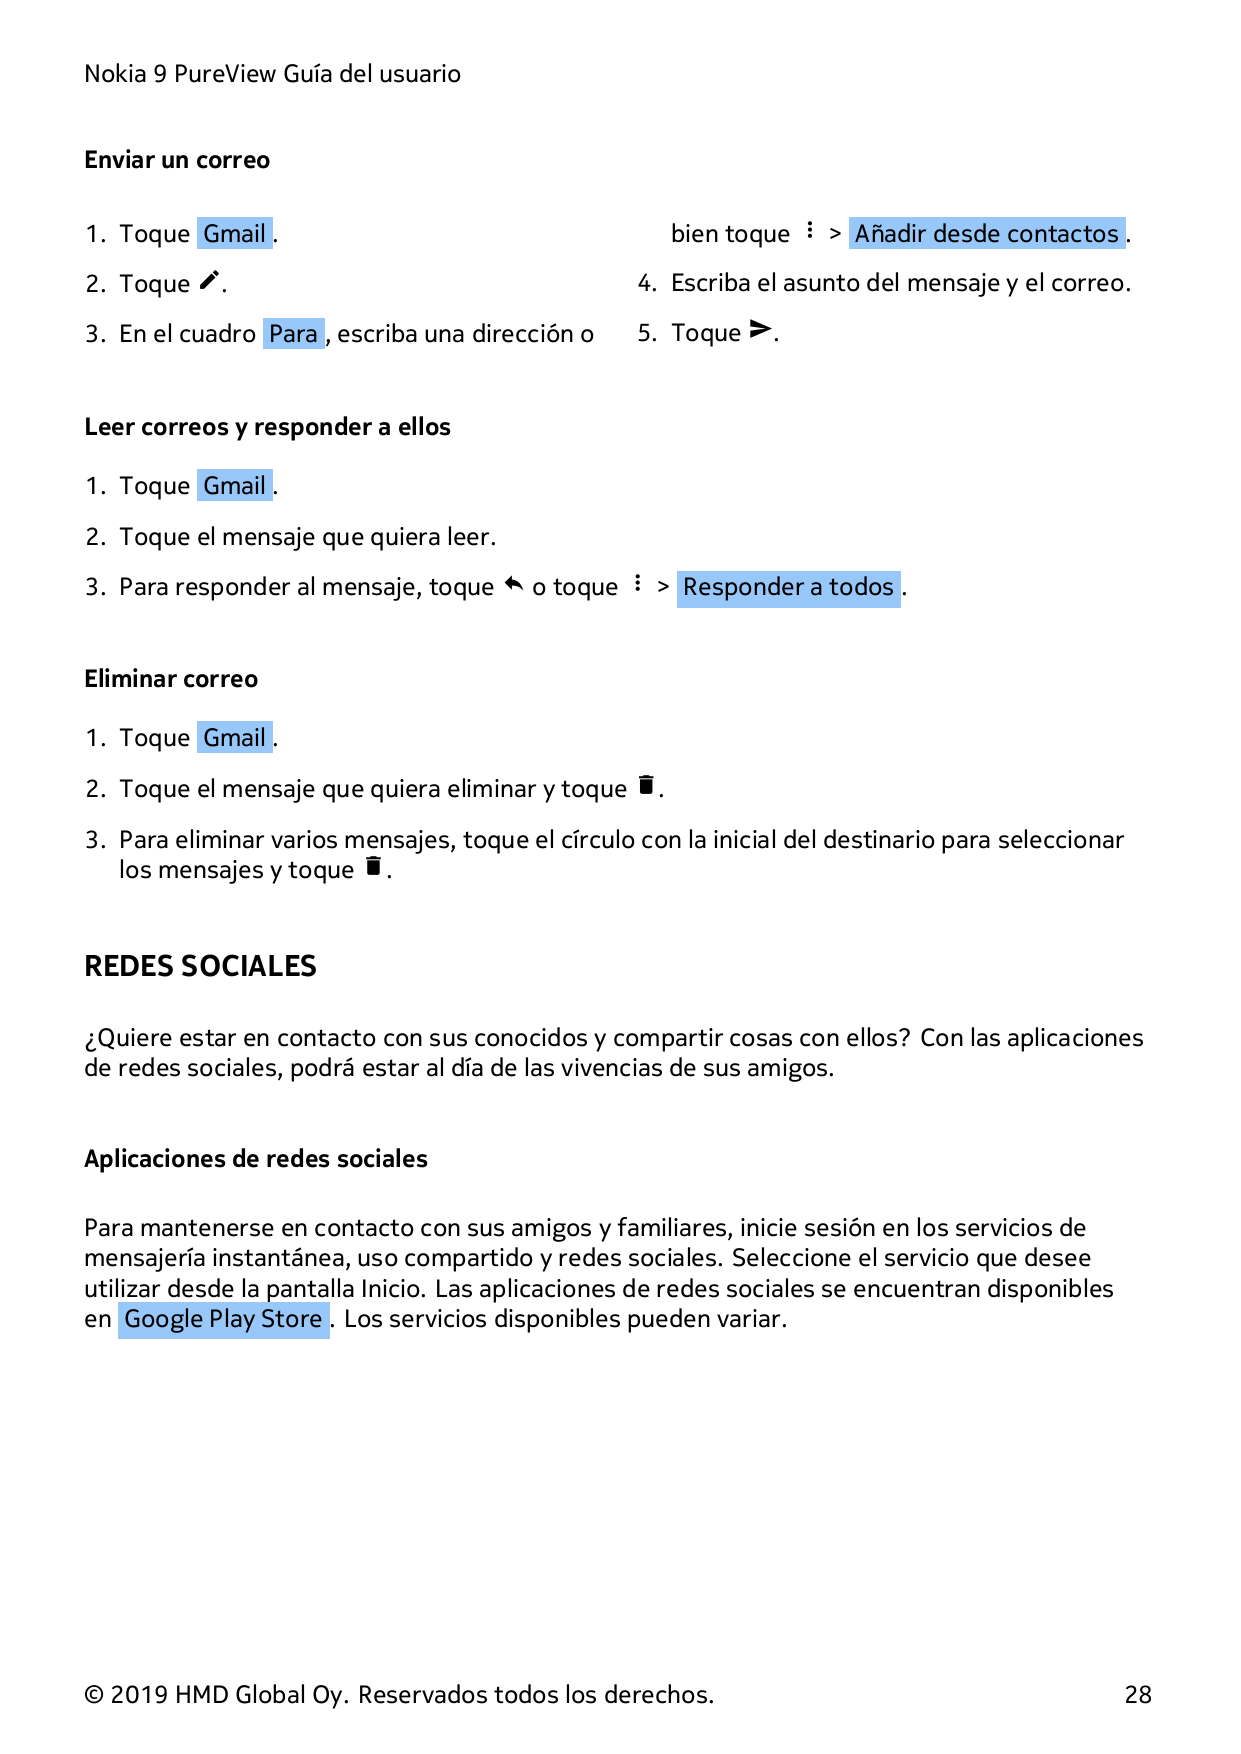 Nokia 9 PureView Guía del usuarioEnviar un correobien toque � > Añadir desde contactos .1. Toque Gmail .2. Toque �.4. Escriba el